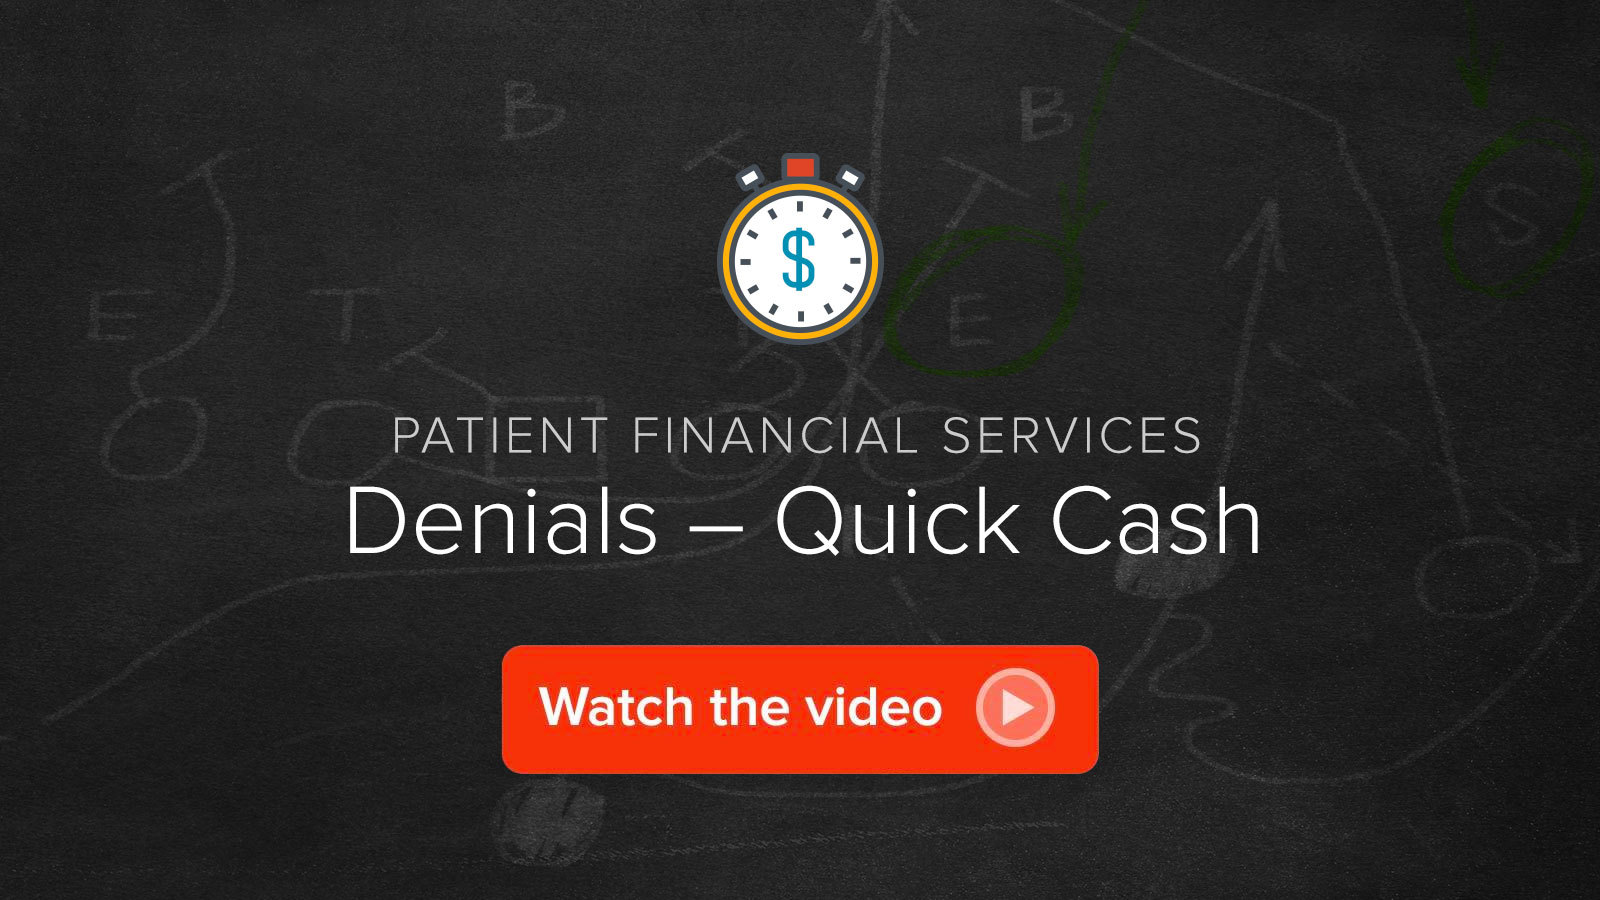 Watch the Denials – Quick Cash video